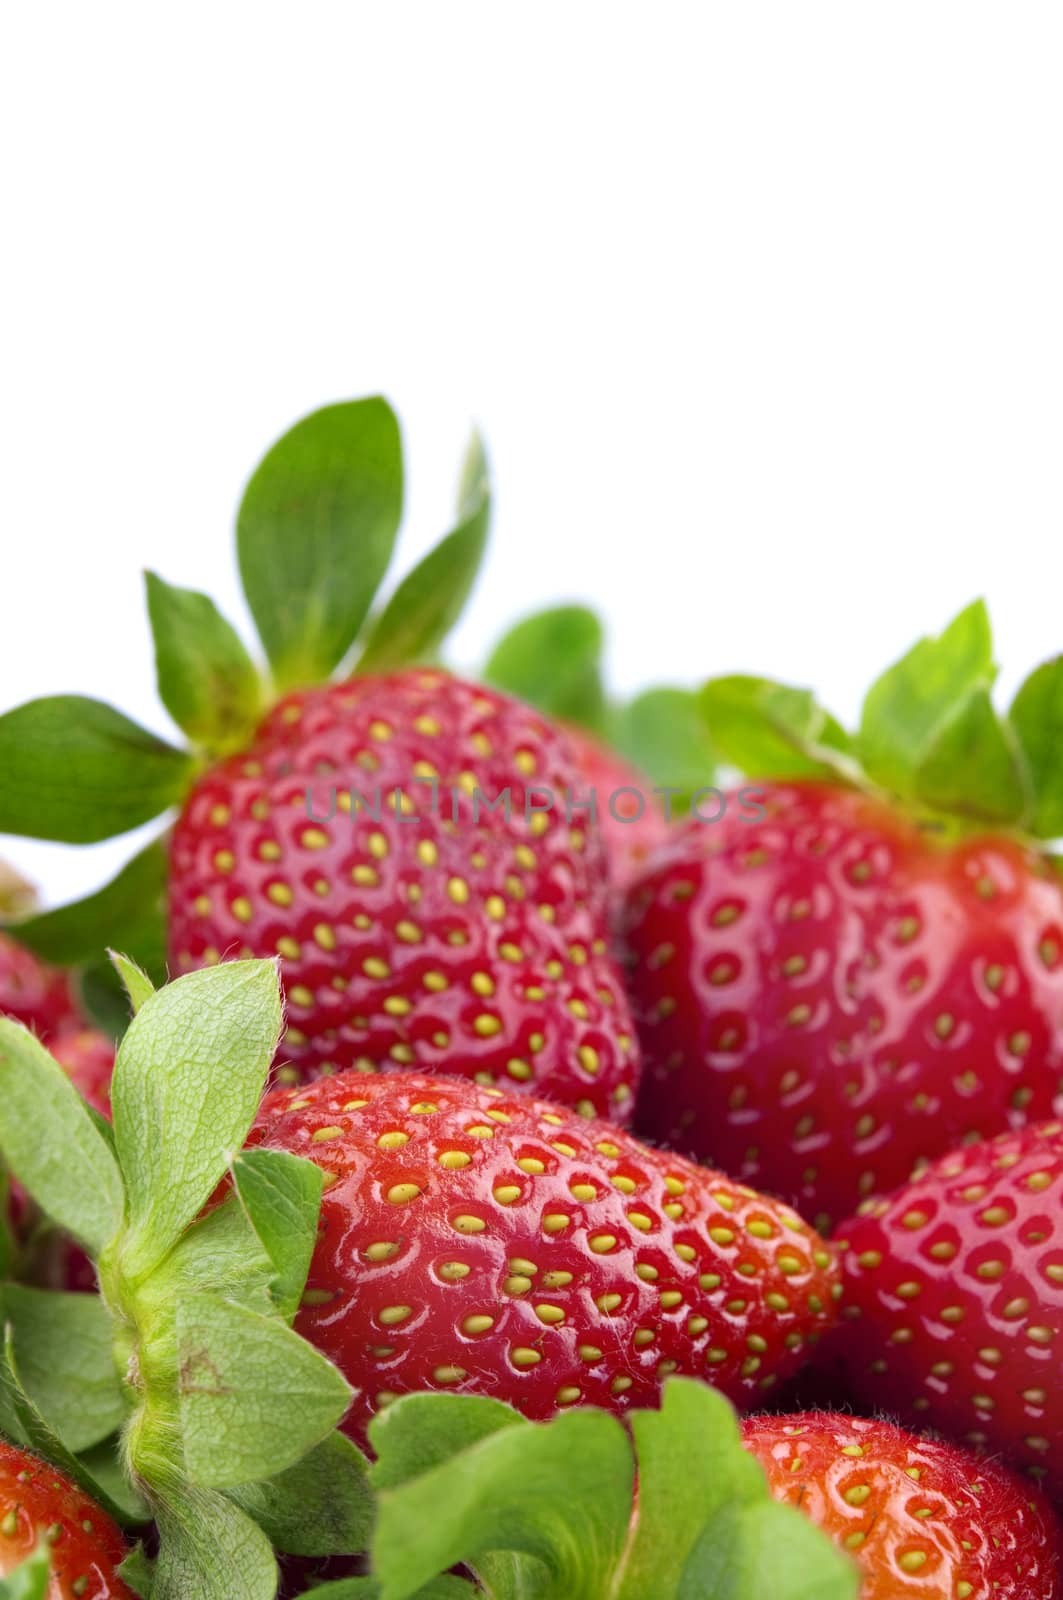 Strawberries by szefei